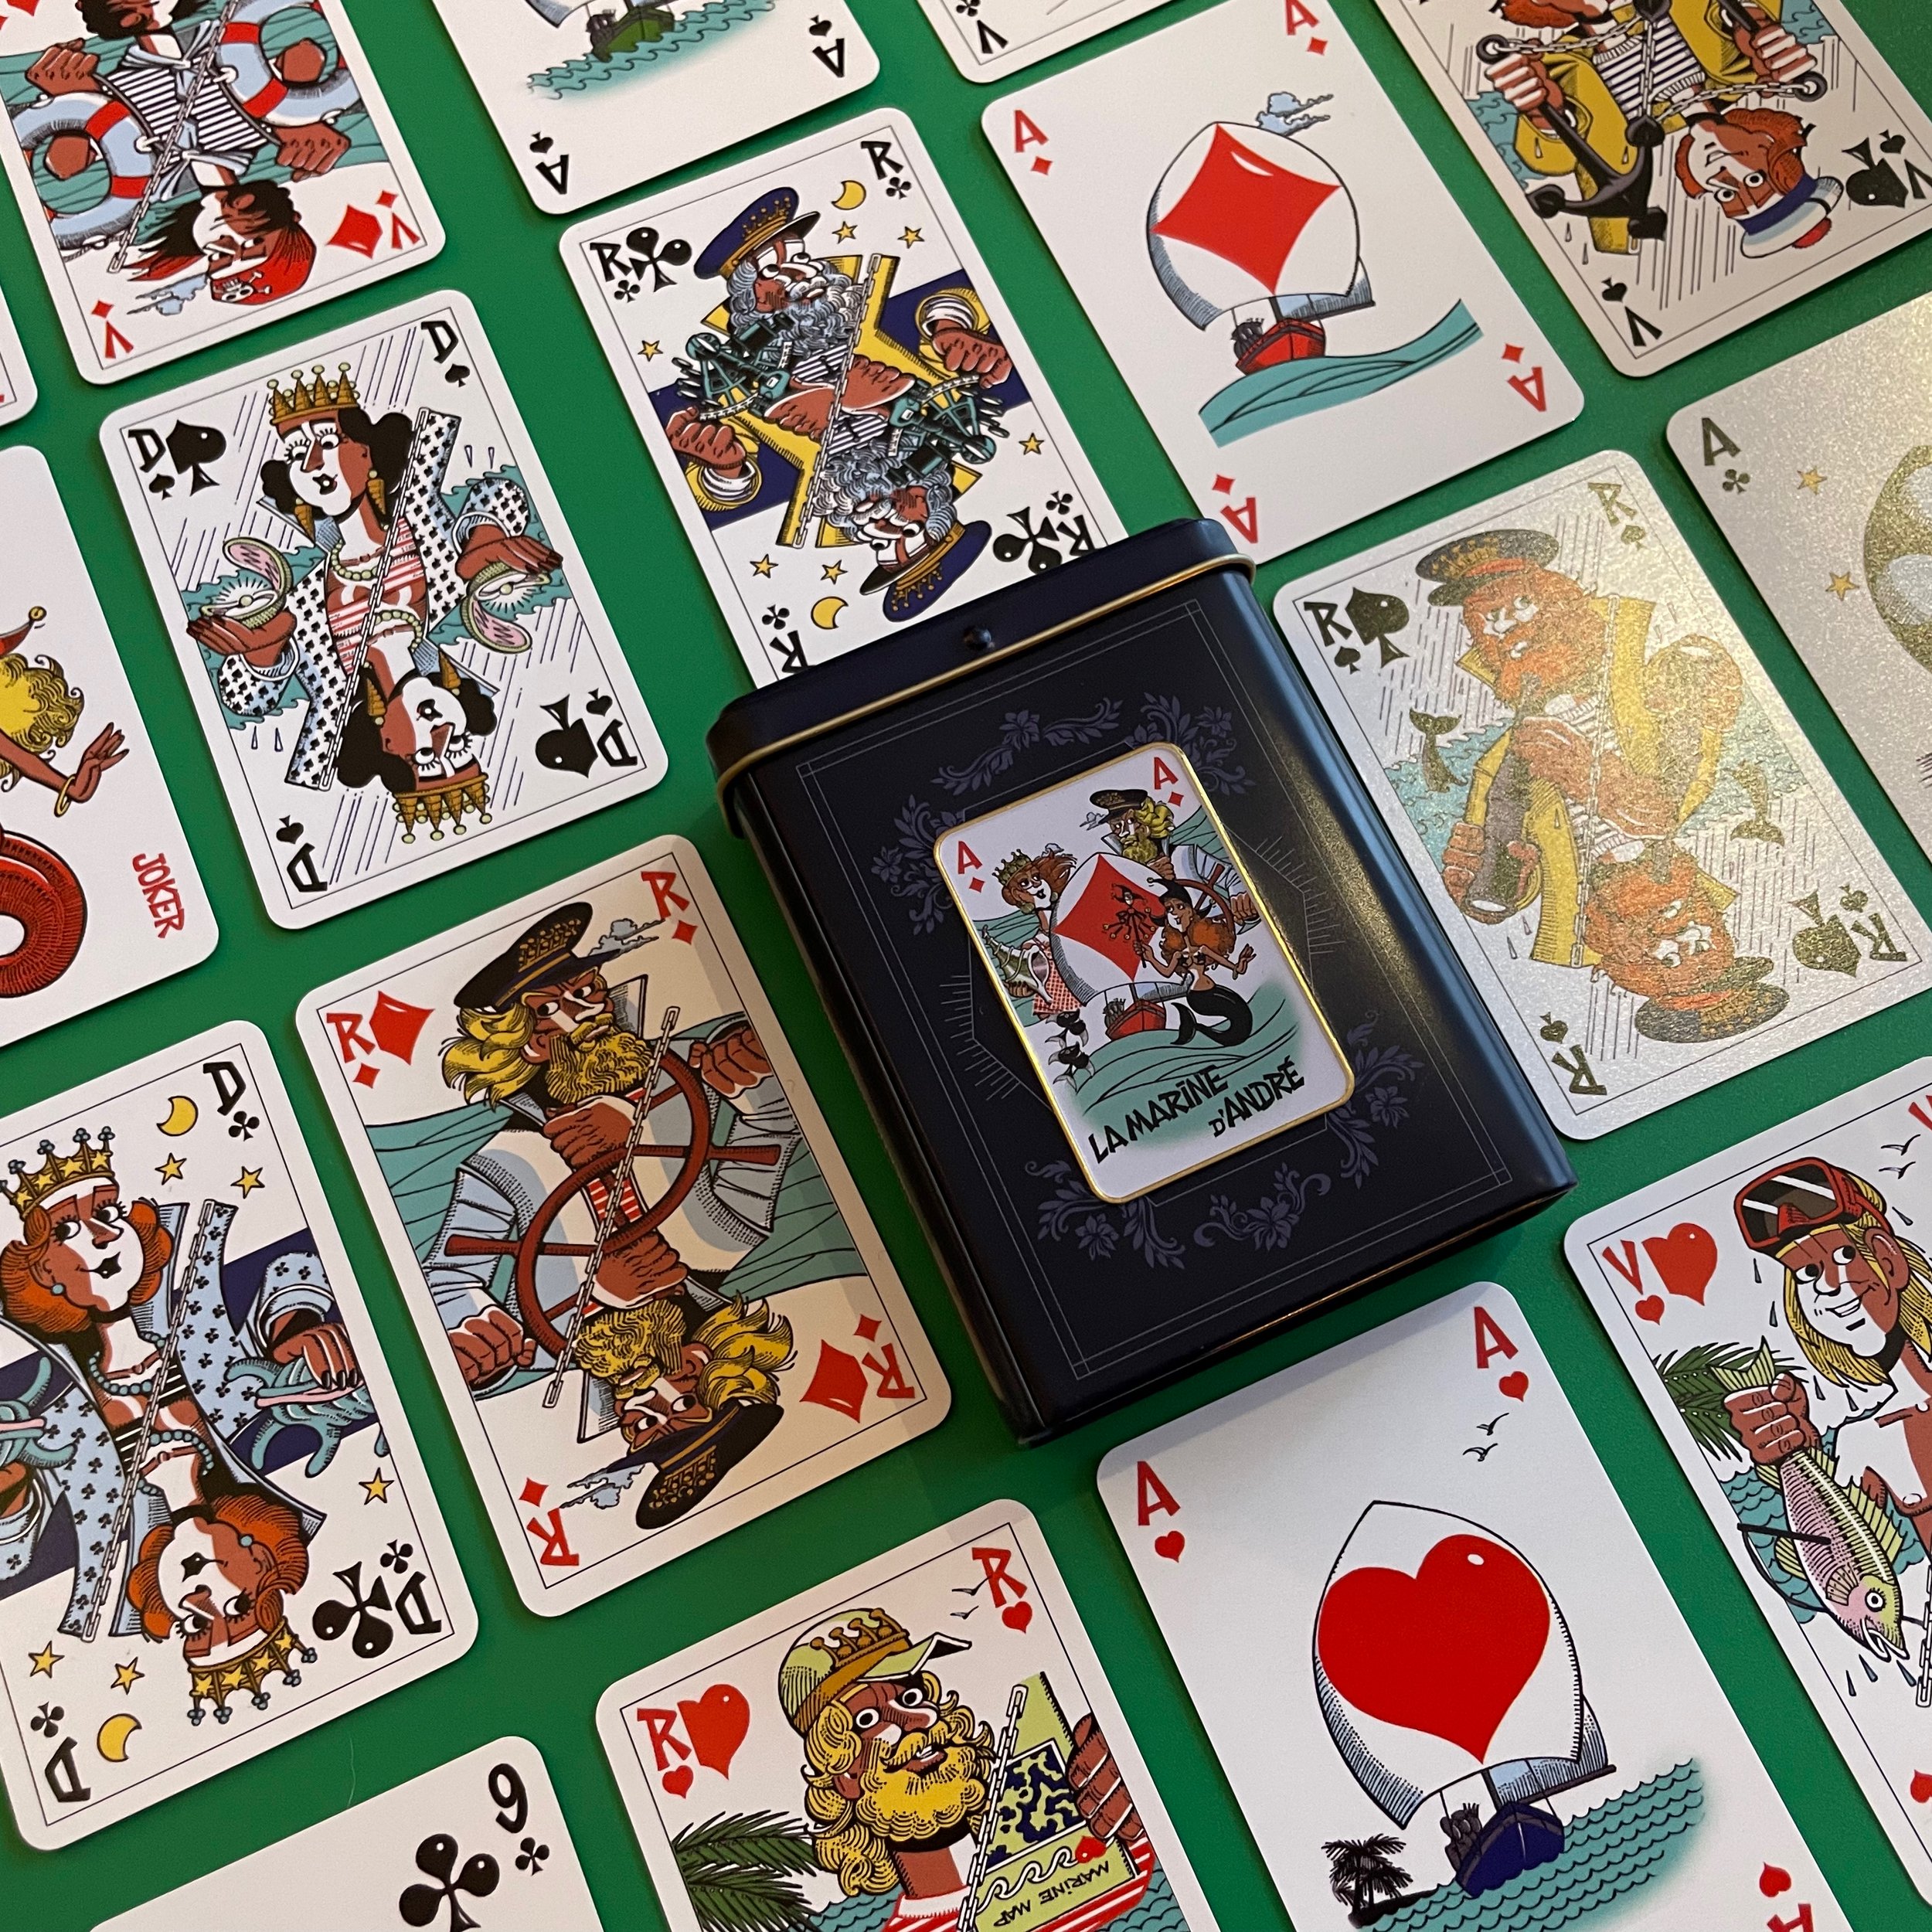 Coffret métal 54 cartes - Cartes à jouer - Le Bridgeur Site Officiel